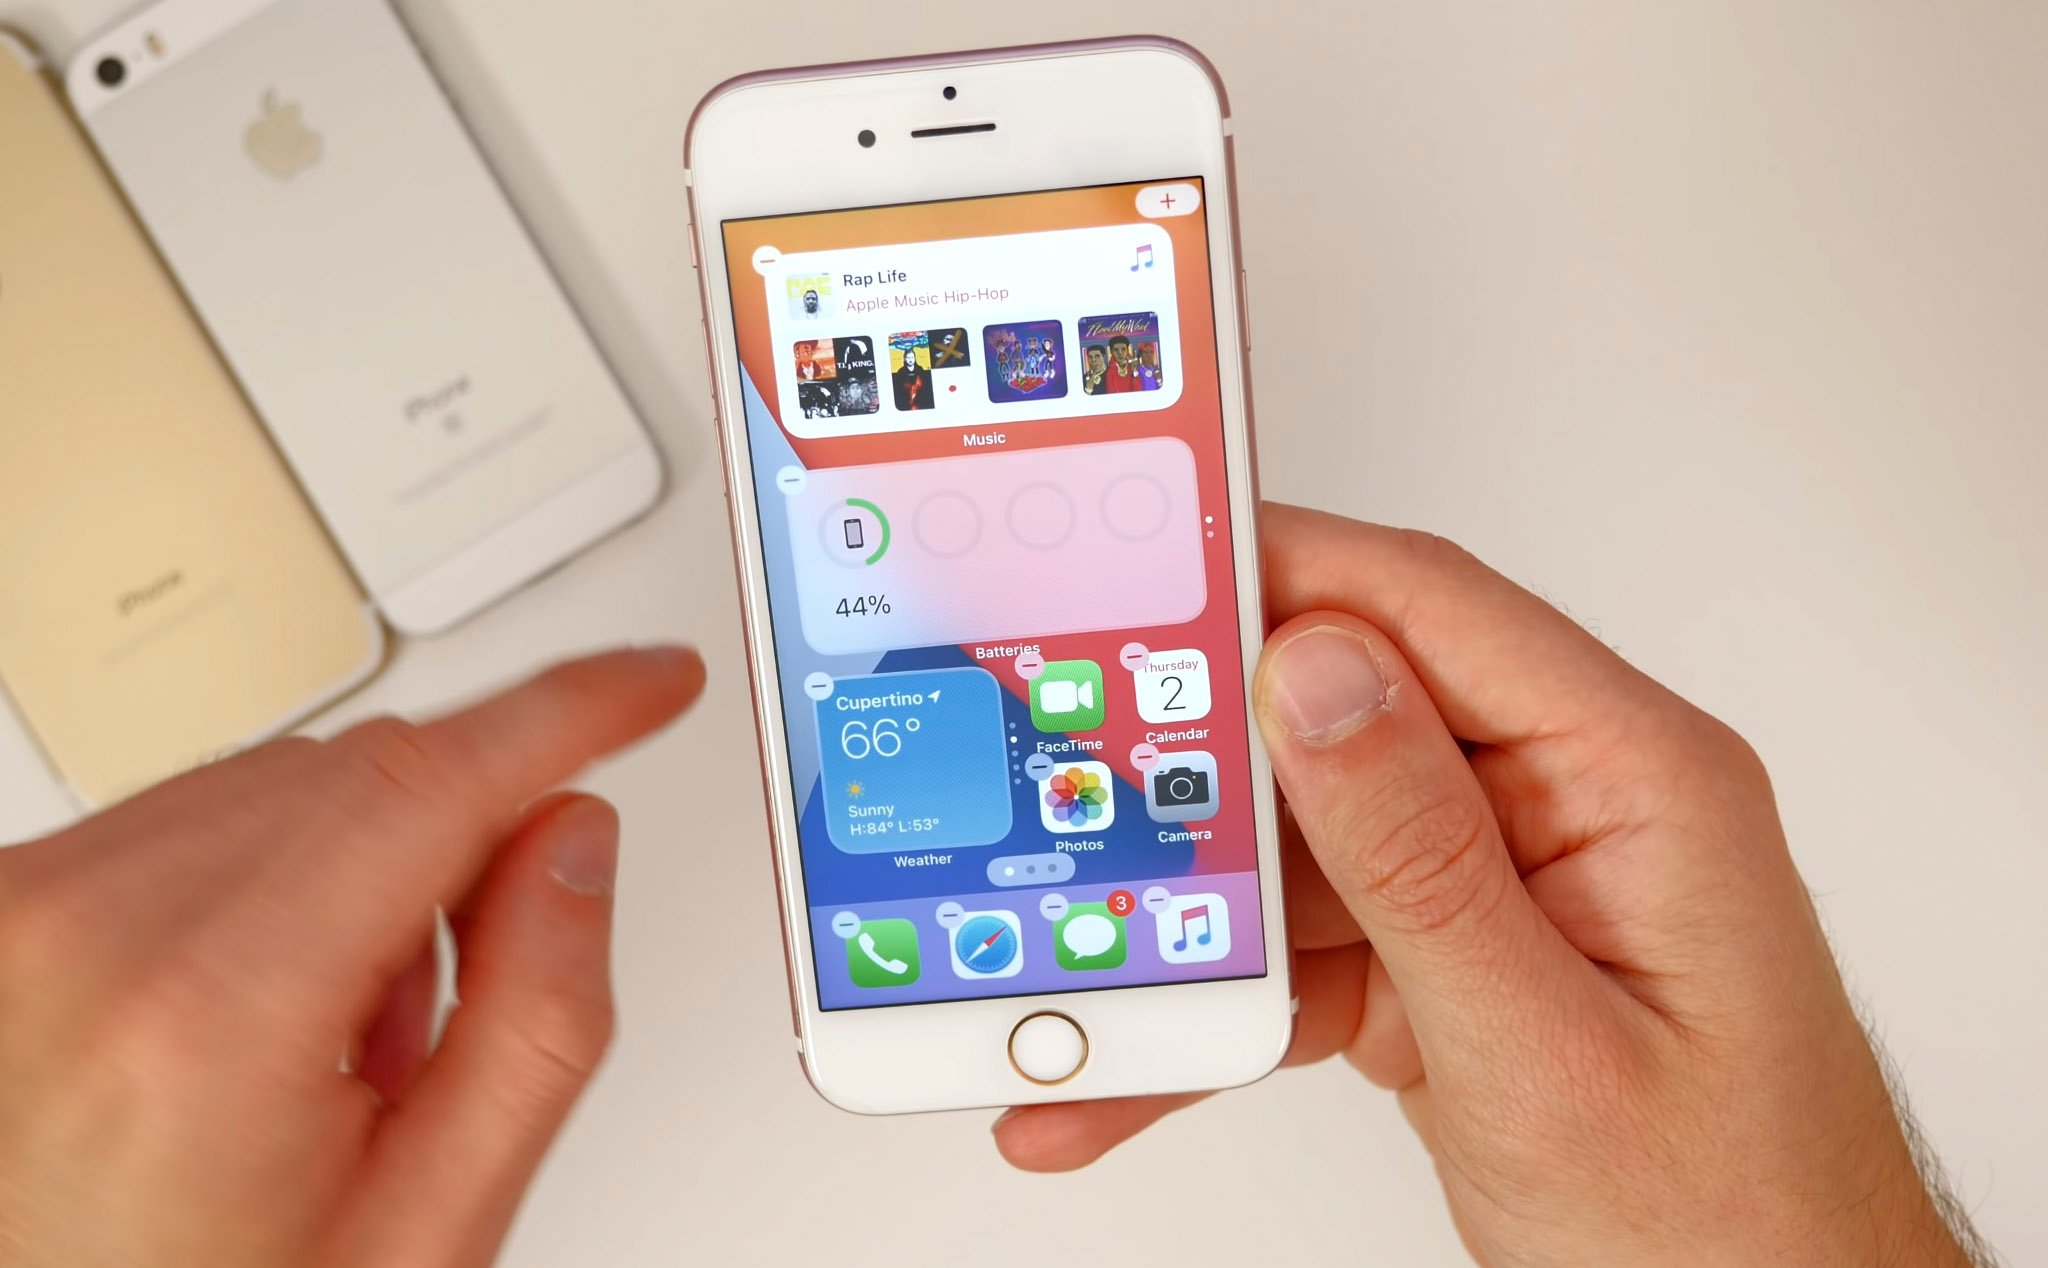 Apple chính thức giới thiệu iPhone 6 và iPhone 6 Plus